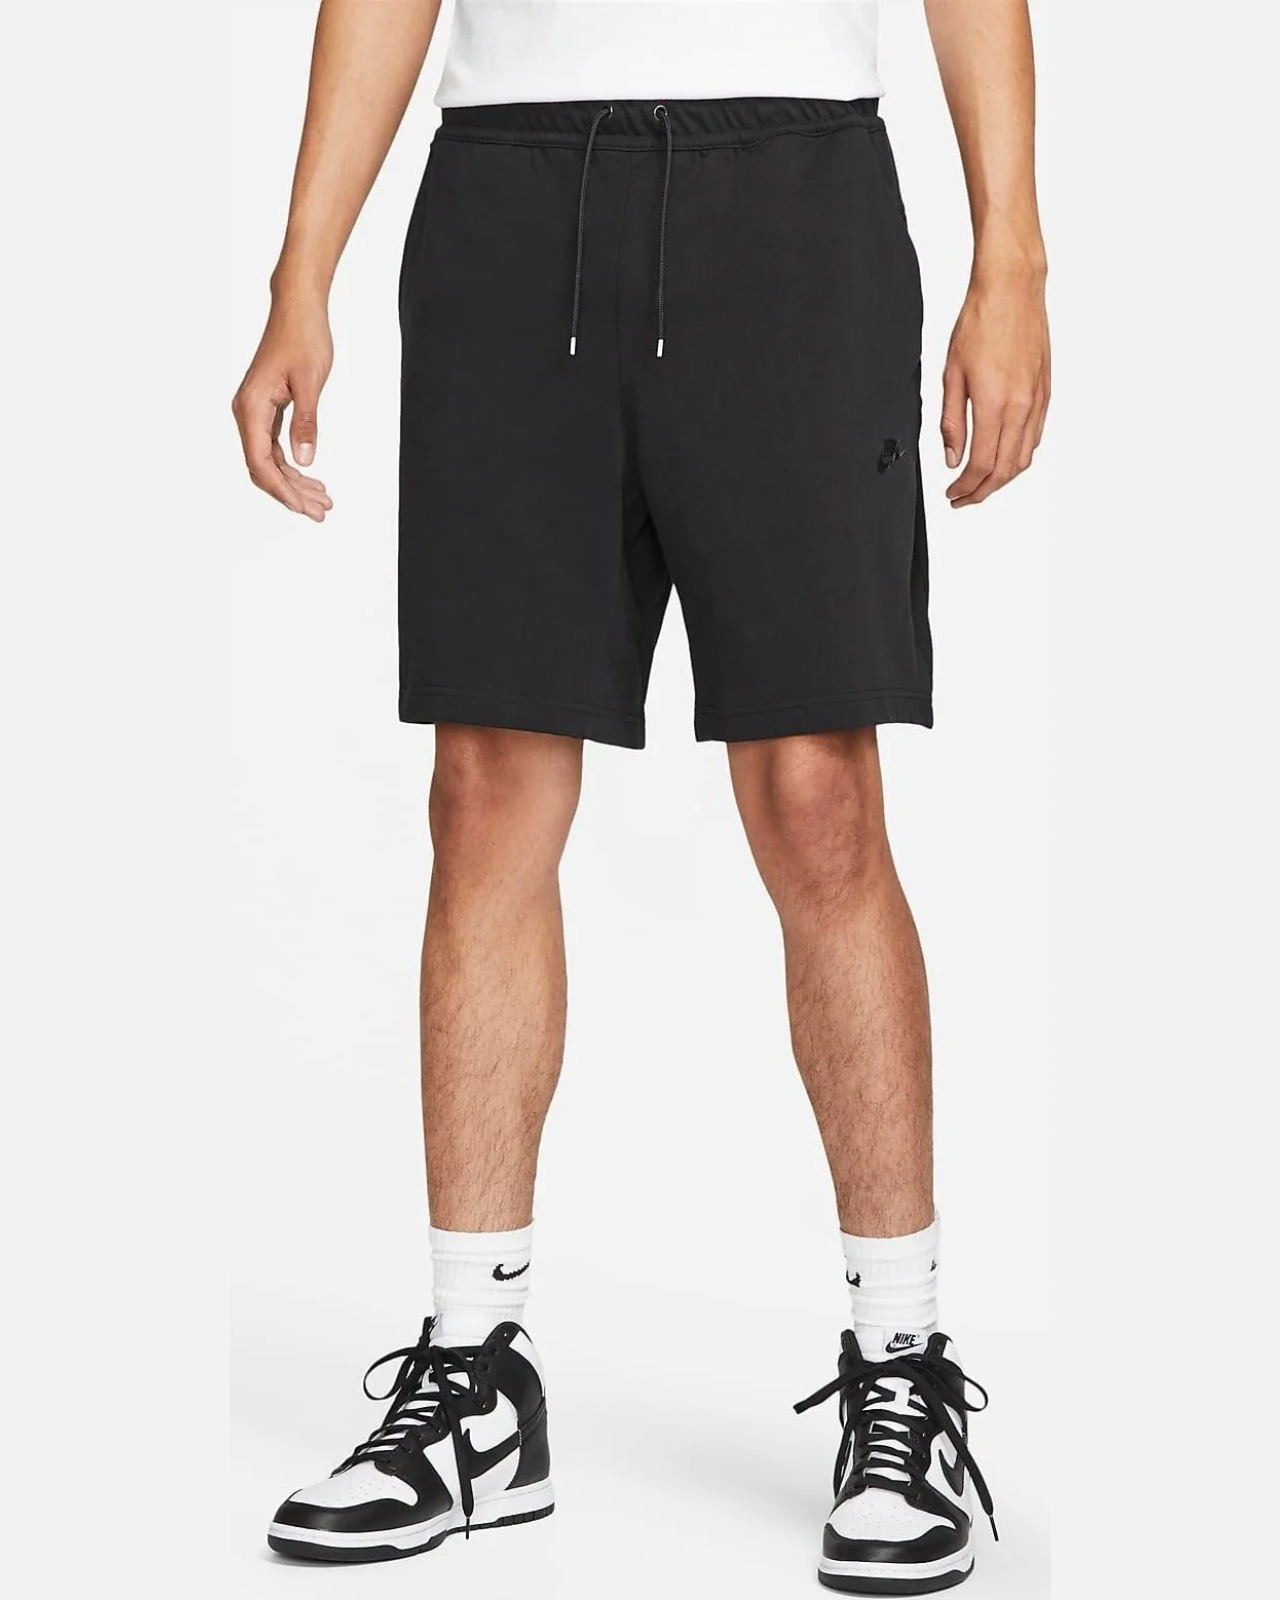 Спортивные шорты мужские Nike Knit Ltwt Short DM6589-010 черные M